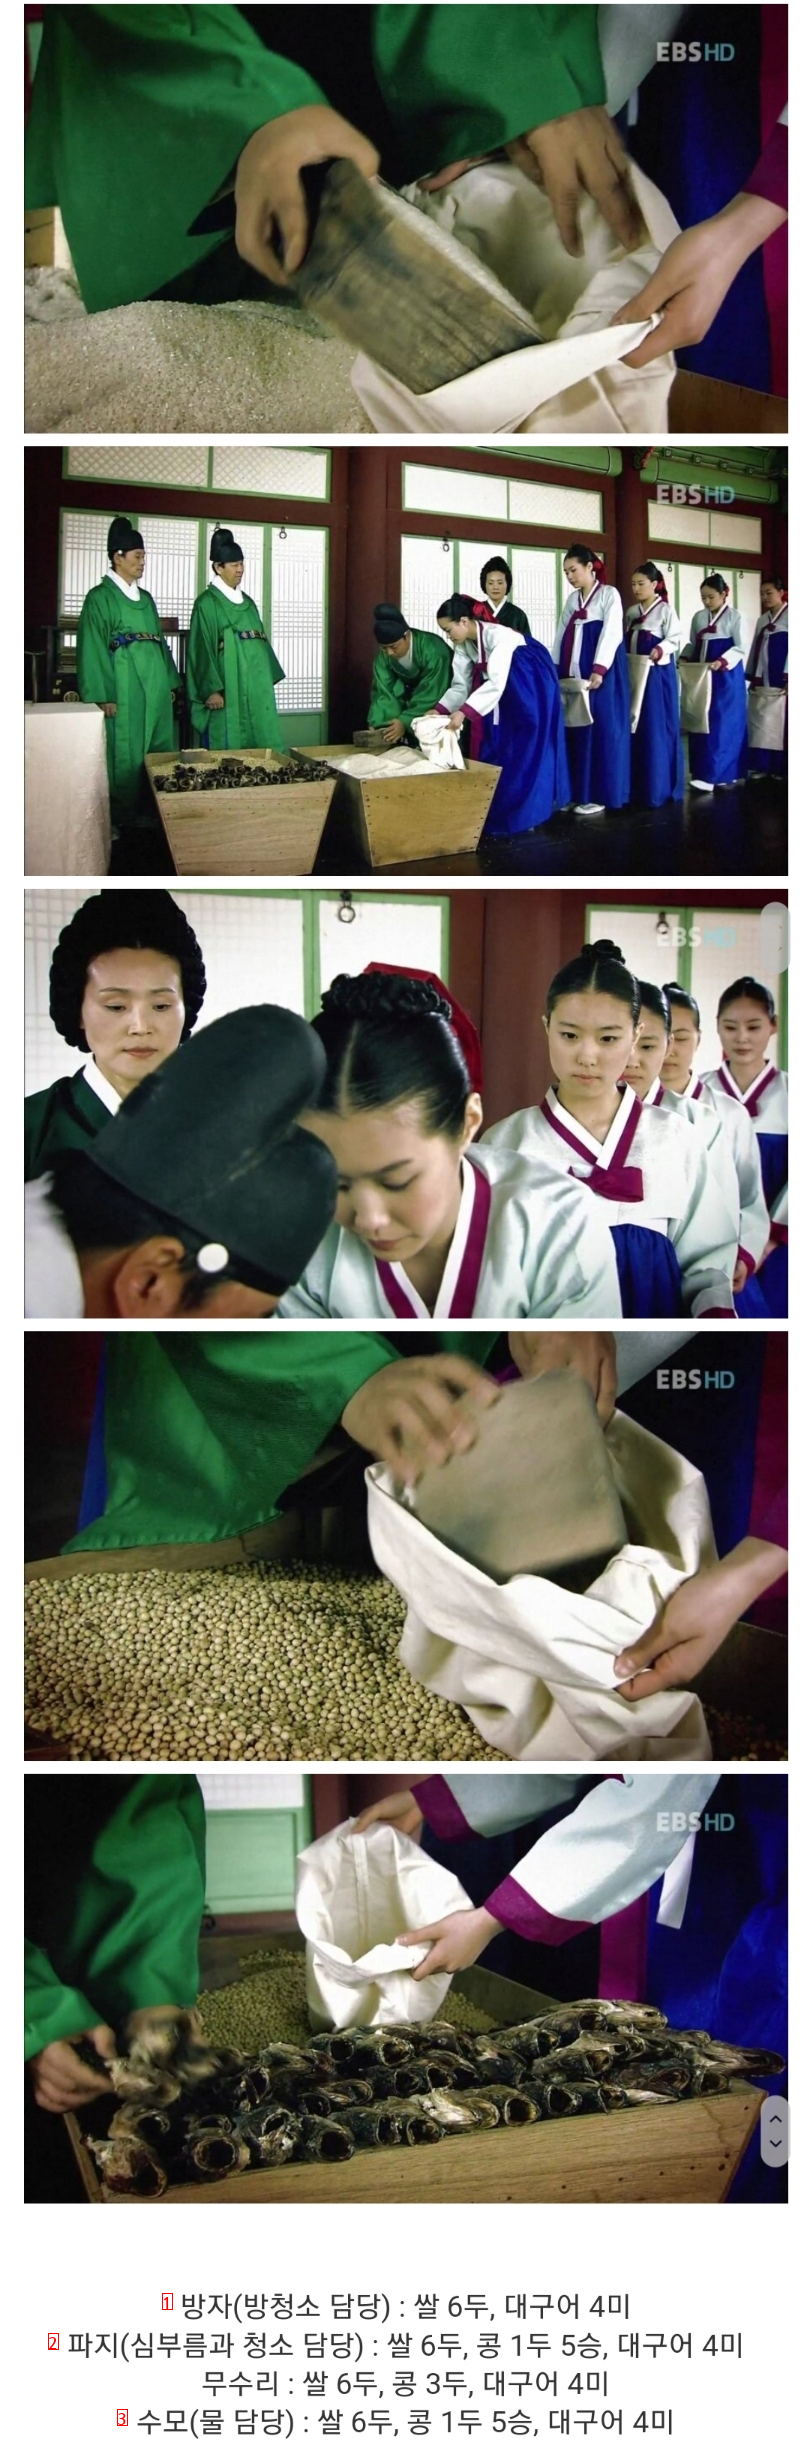 朝鮮時代の女官たちが給料をもらっている姿jpg